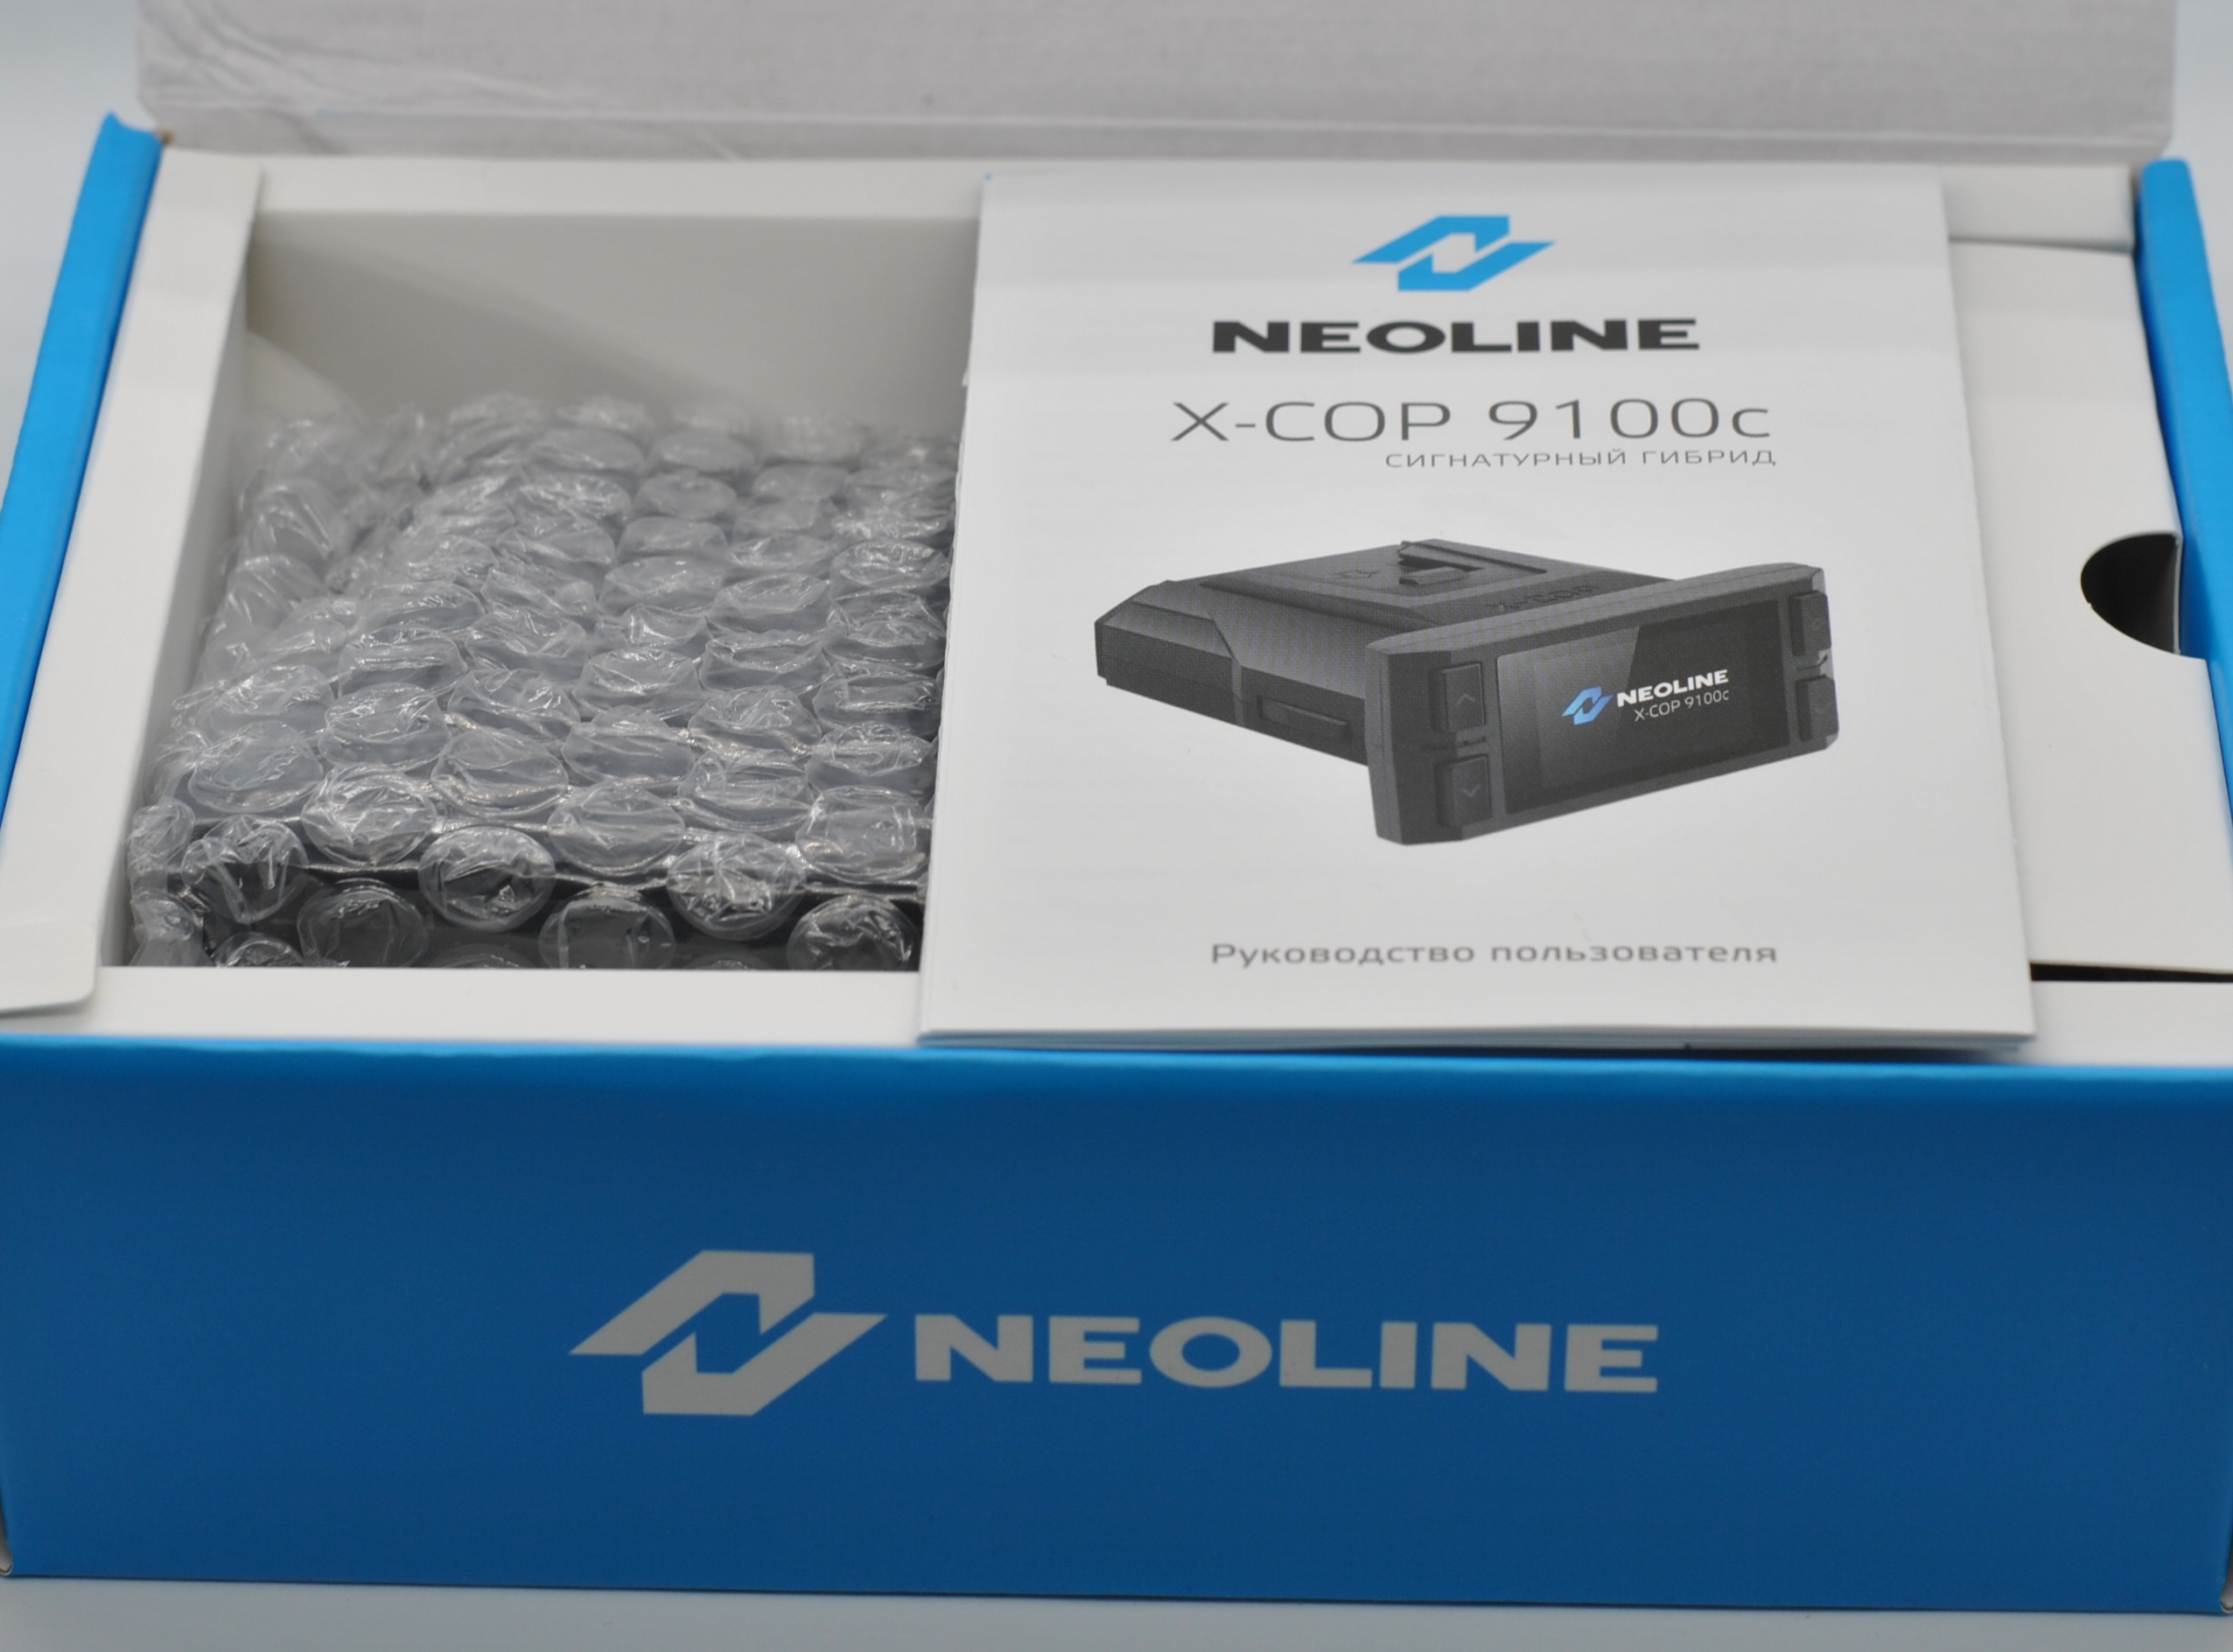 Neoline x cop 9100c. Неолайн 9100. Neoline x-cop 9100s. Neoline x-cop 9100d обзор.